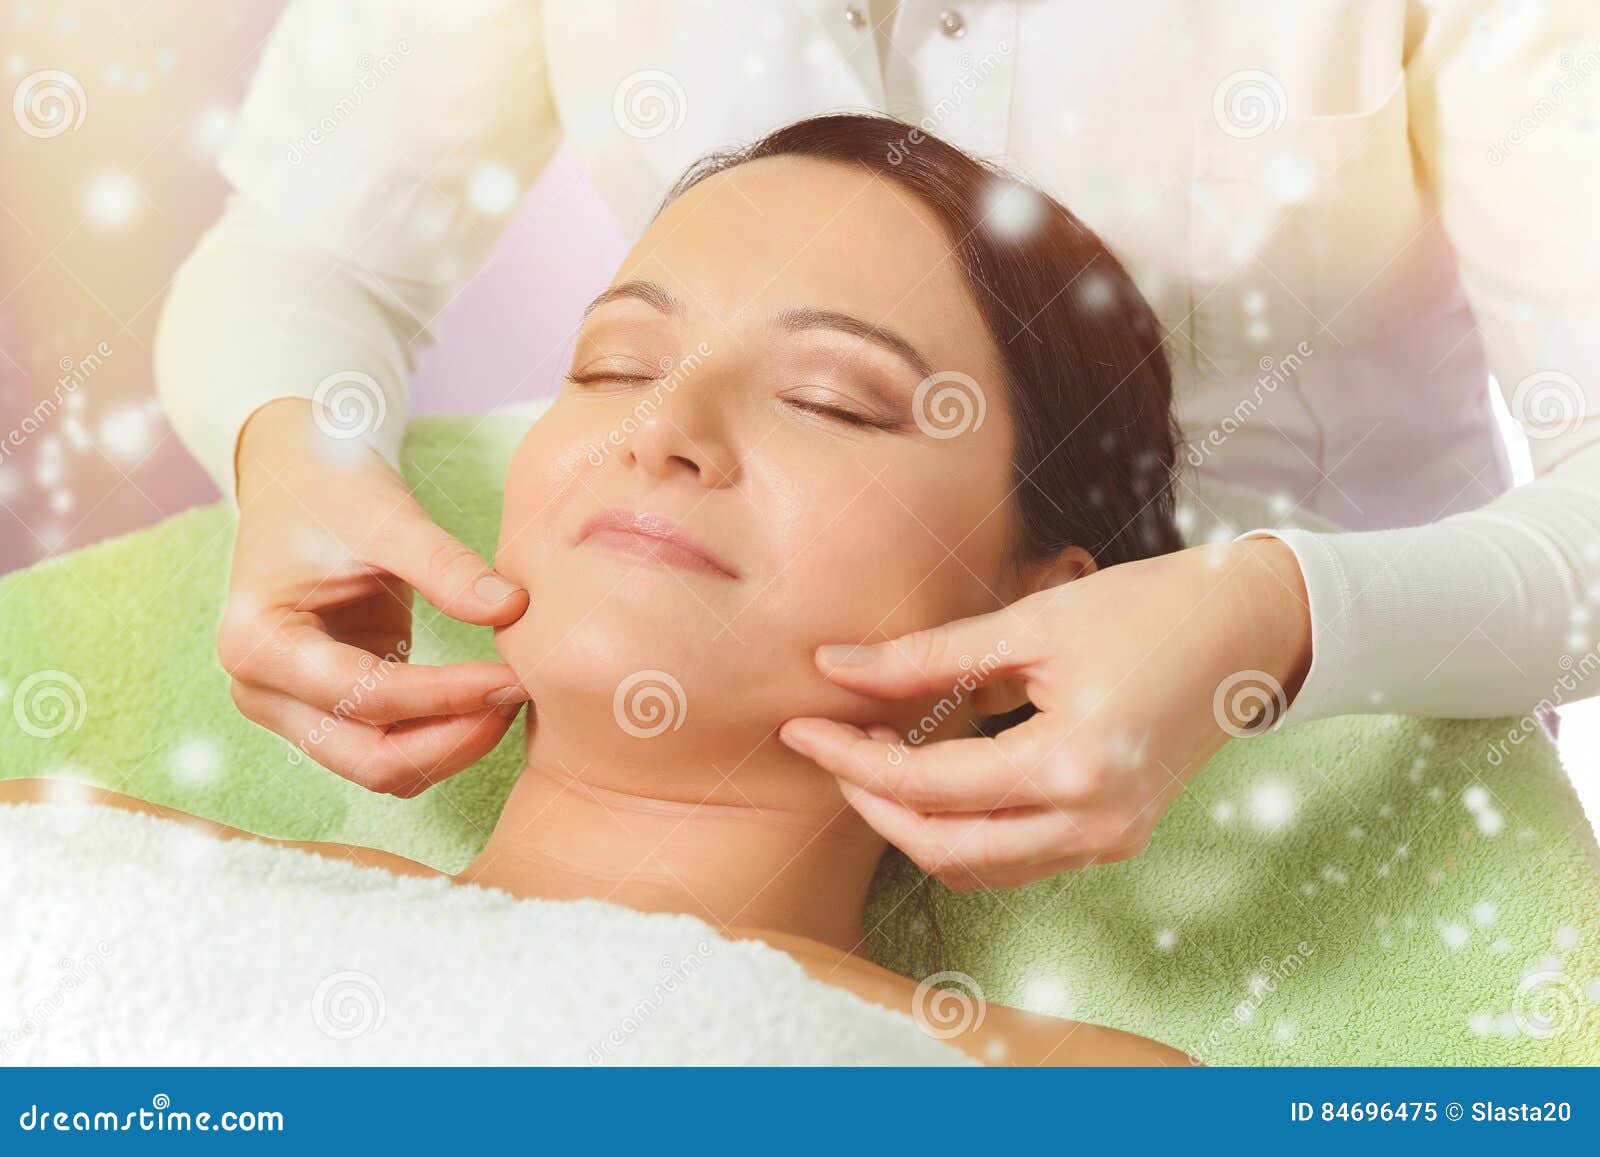 Spa Massage Stock Image Image Of Feminine Aging Aesthetic 84696475